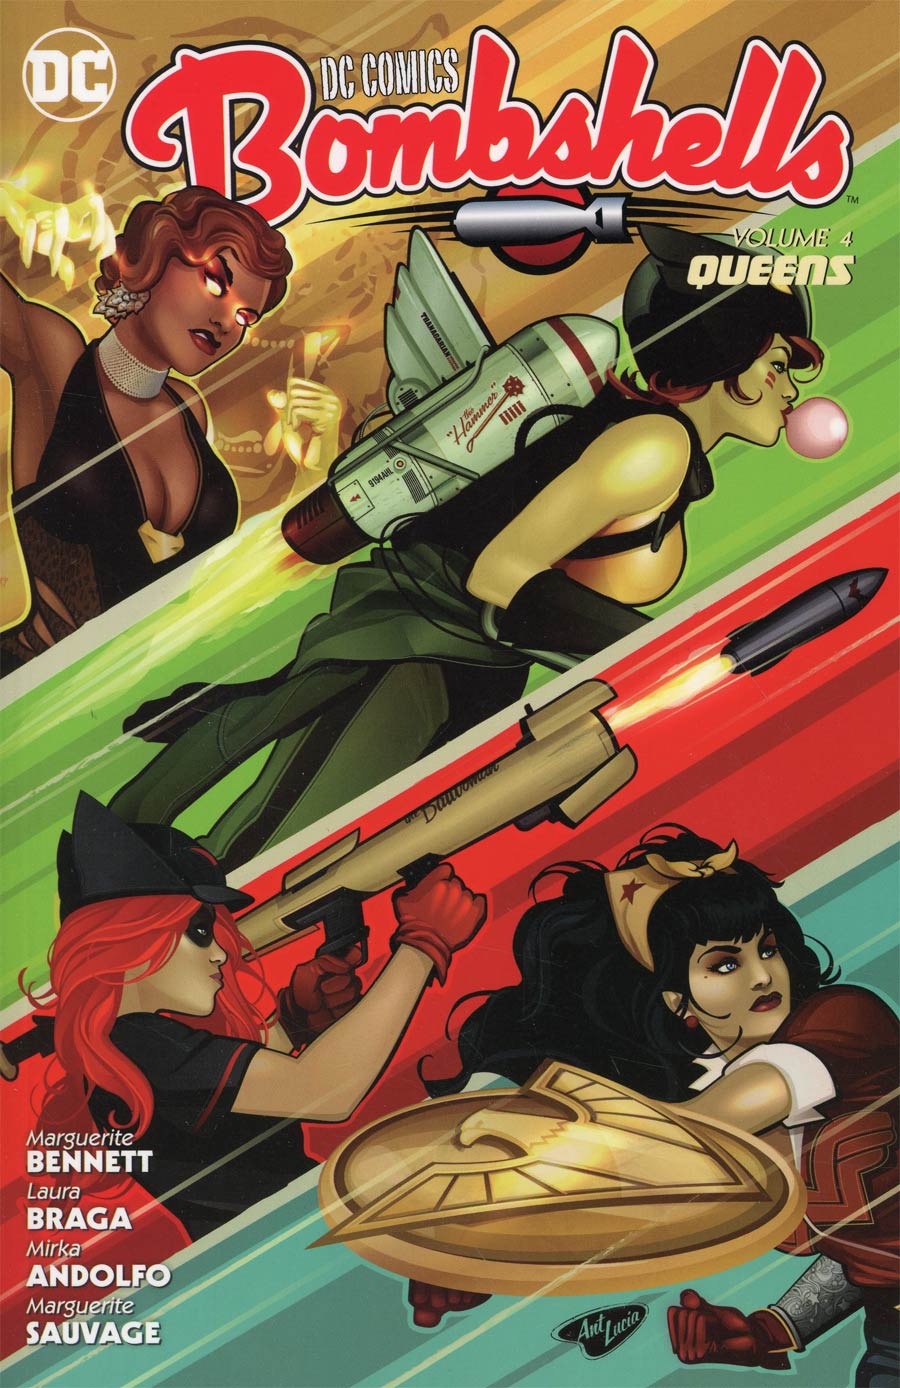 DC Comics Bombshells Vol 4 Queens TP